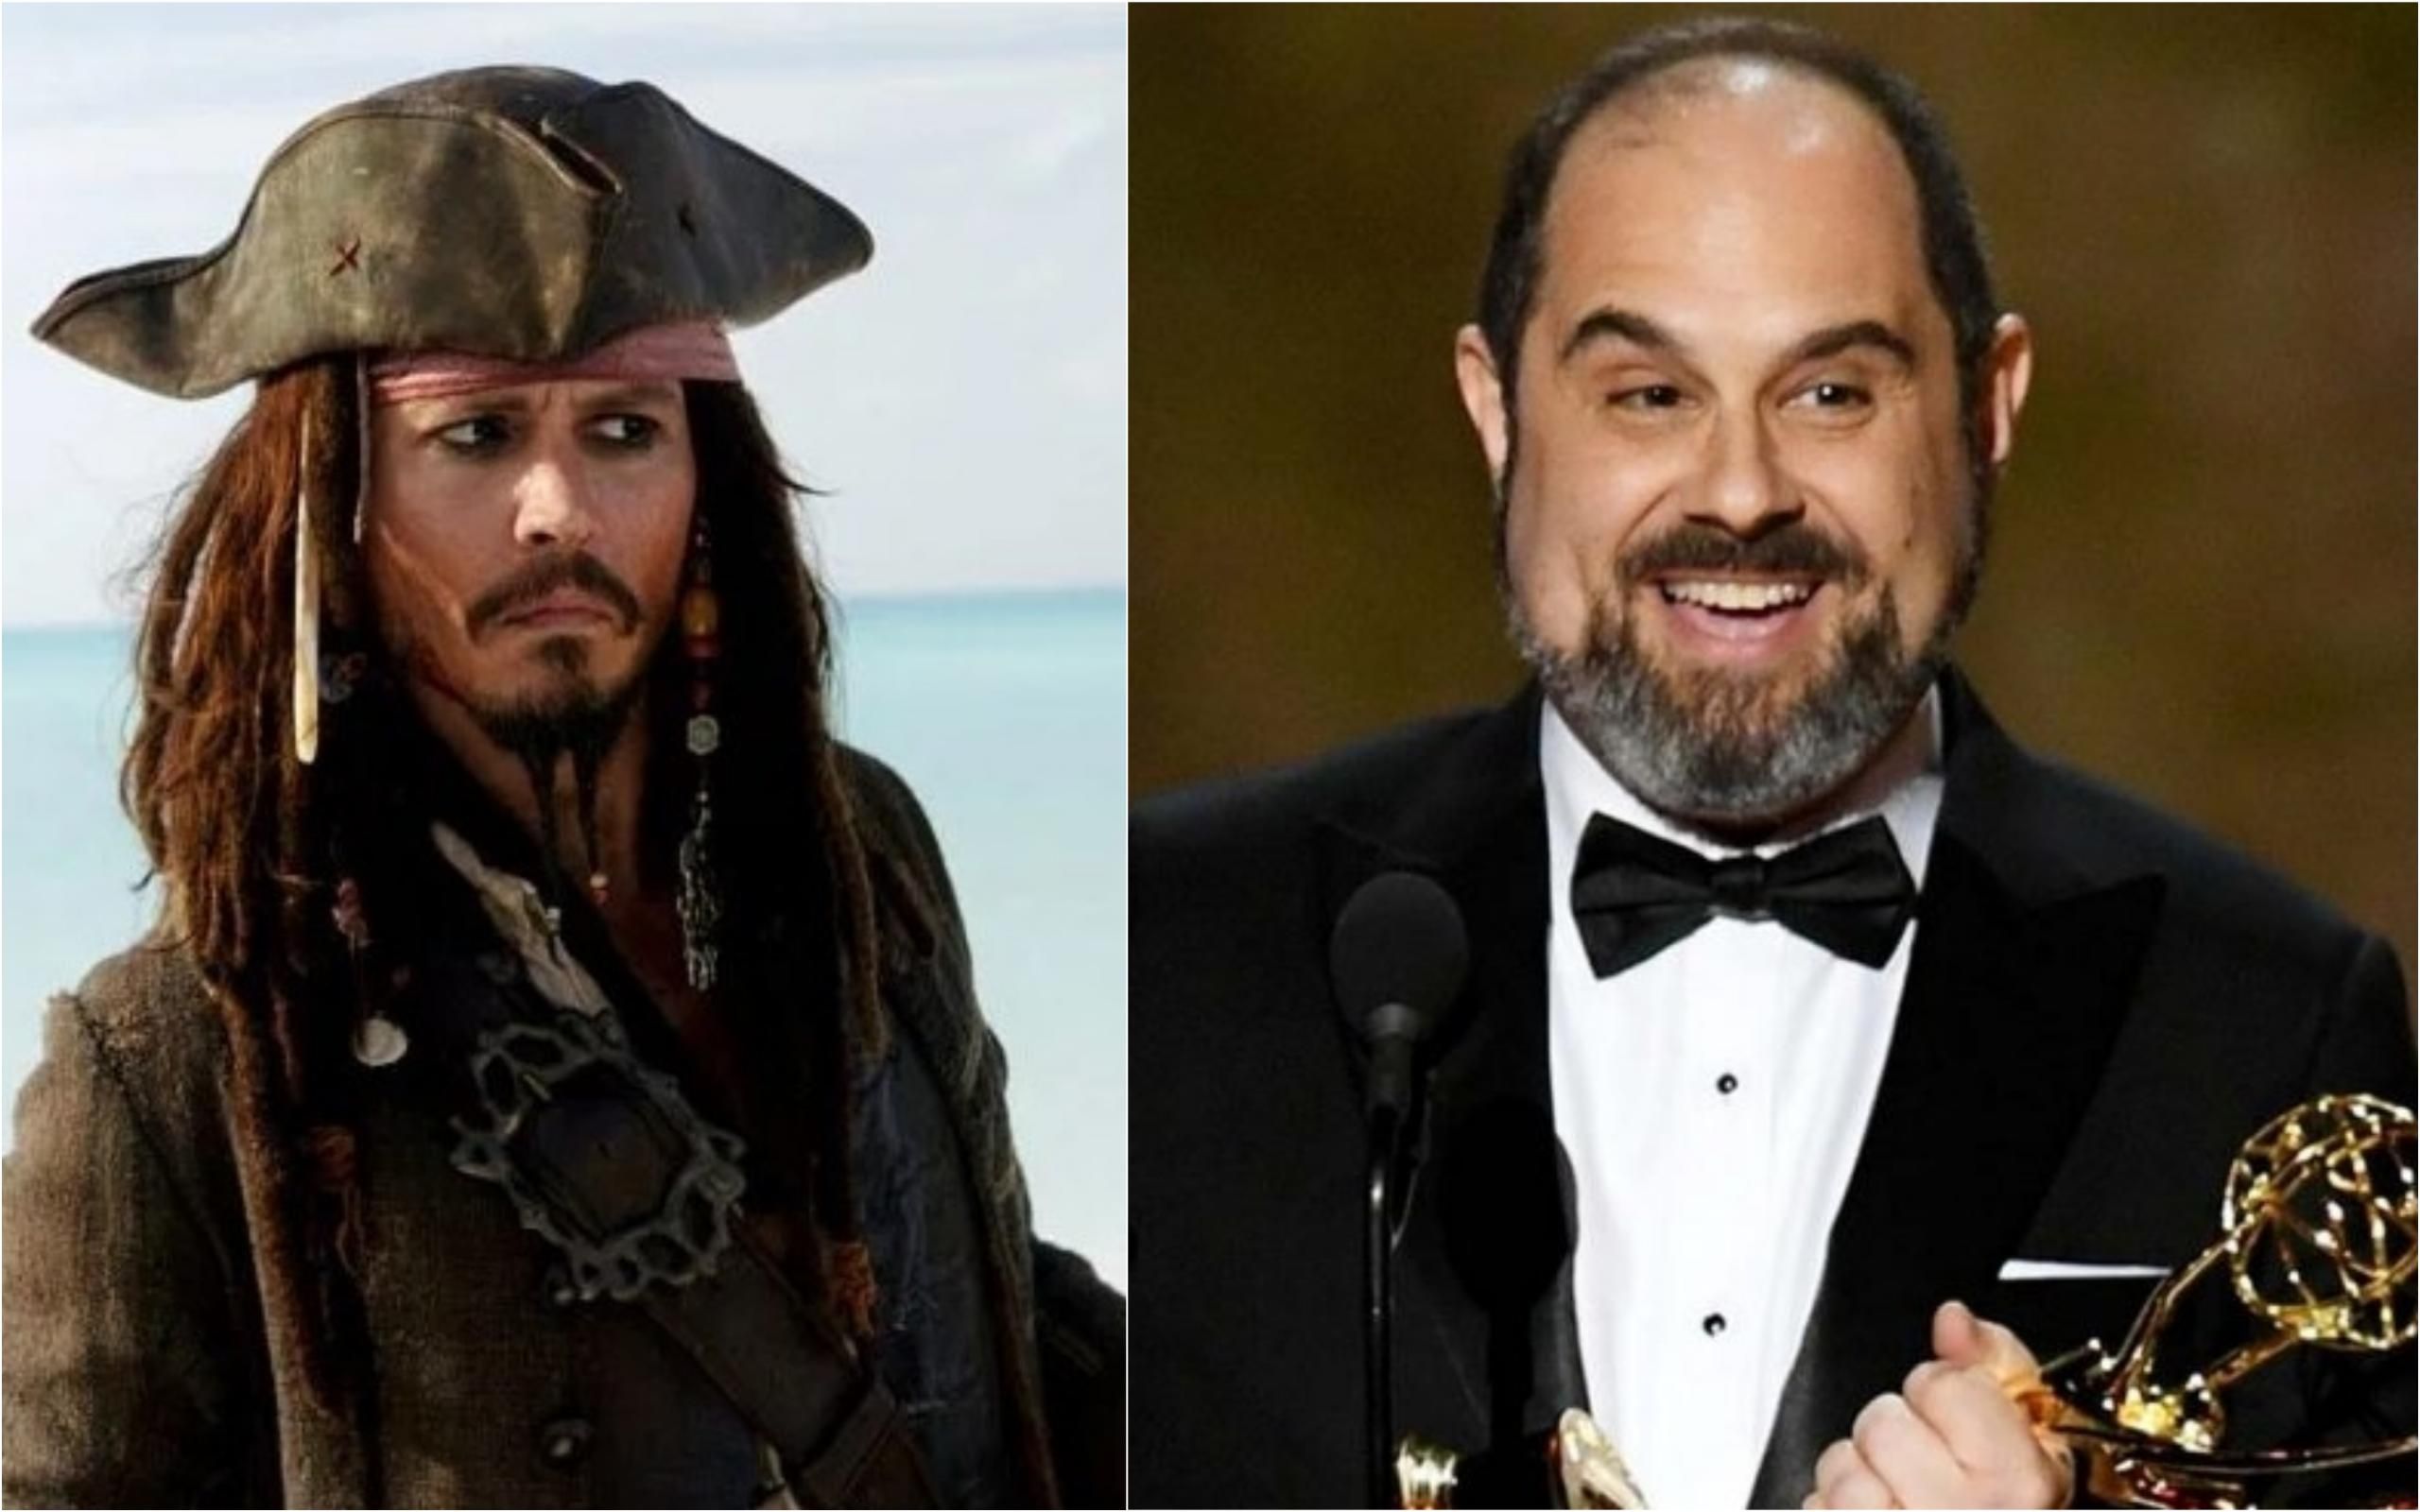 Творець серіалу "Чорнобиль" перезніме "Піратів Карибського моря" разом зі студією Disney